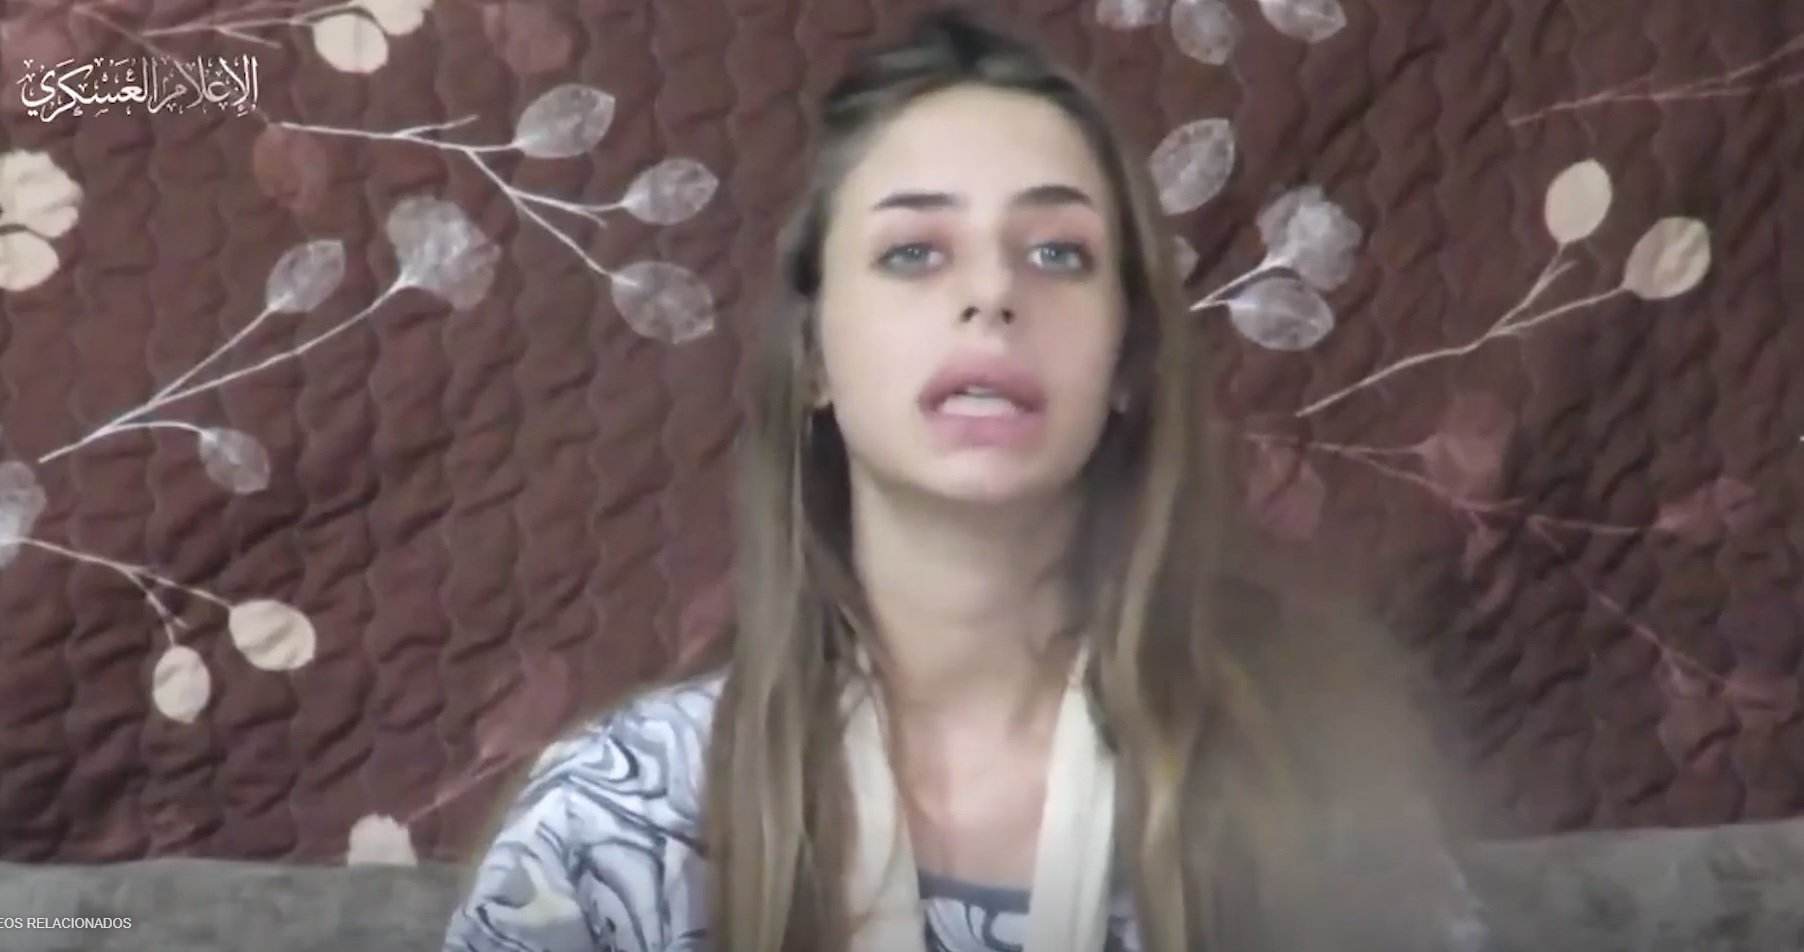 Hamàs publica un vídeo de Mia Schem, l'ostatge israeliana: "Si us plau, traieu-me d'aquí"